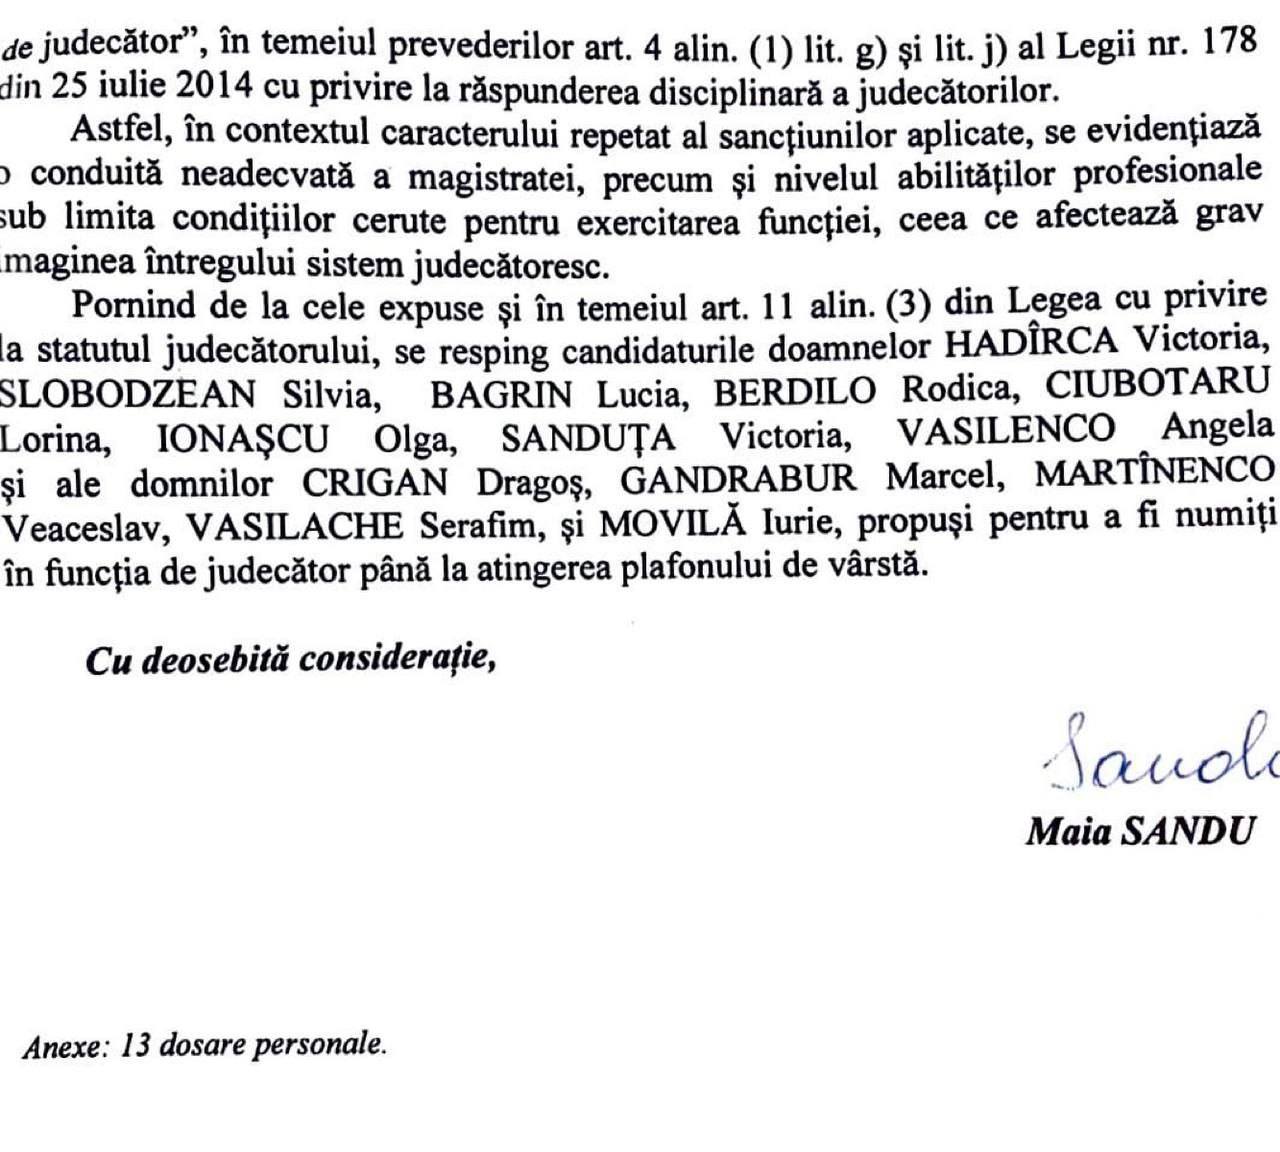 DOC Maia Sandu a respins candidaturile a 13 magistrați pentru a fi numiți judecători până ating plafonul de vârstă